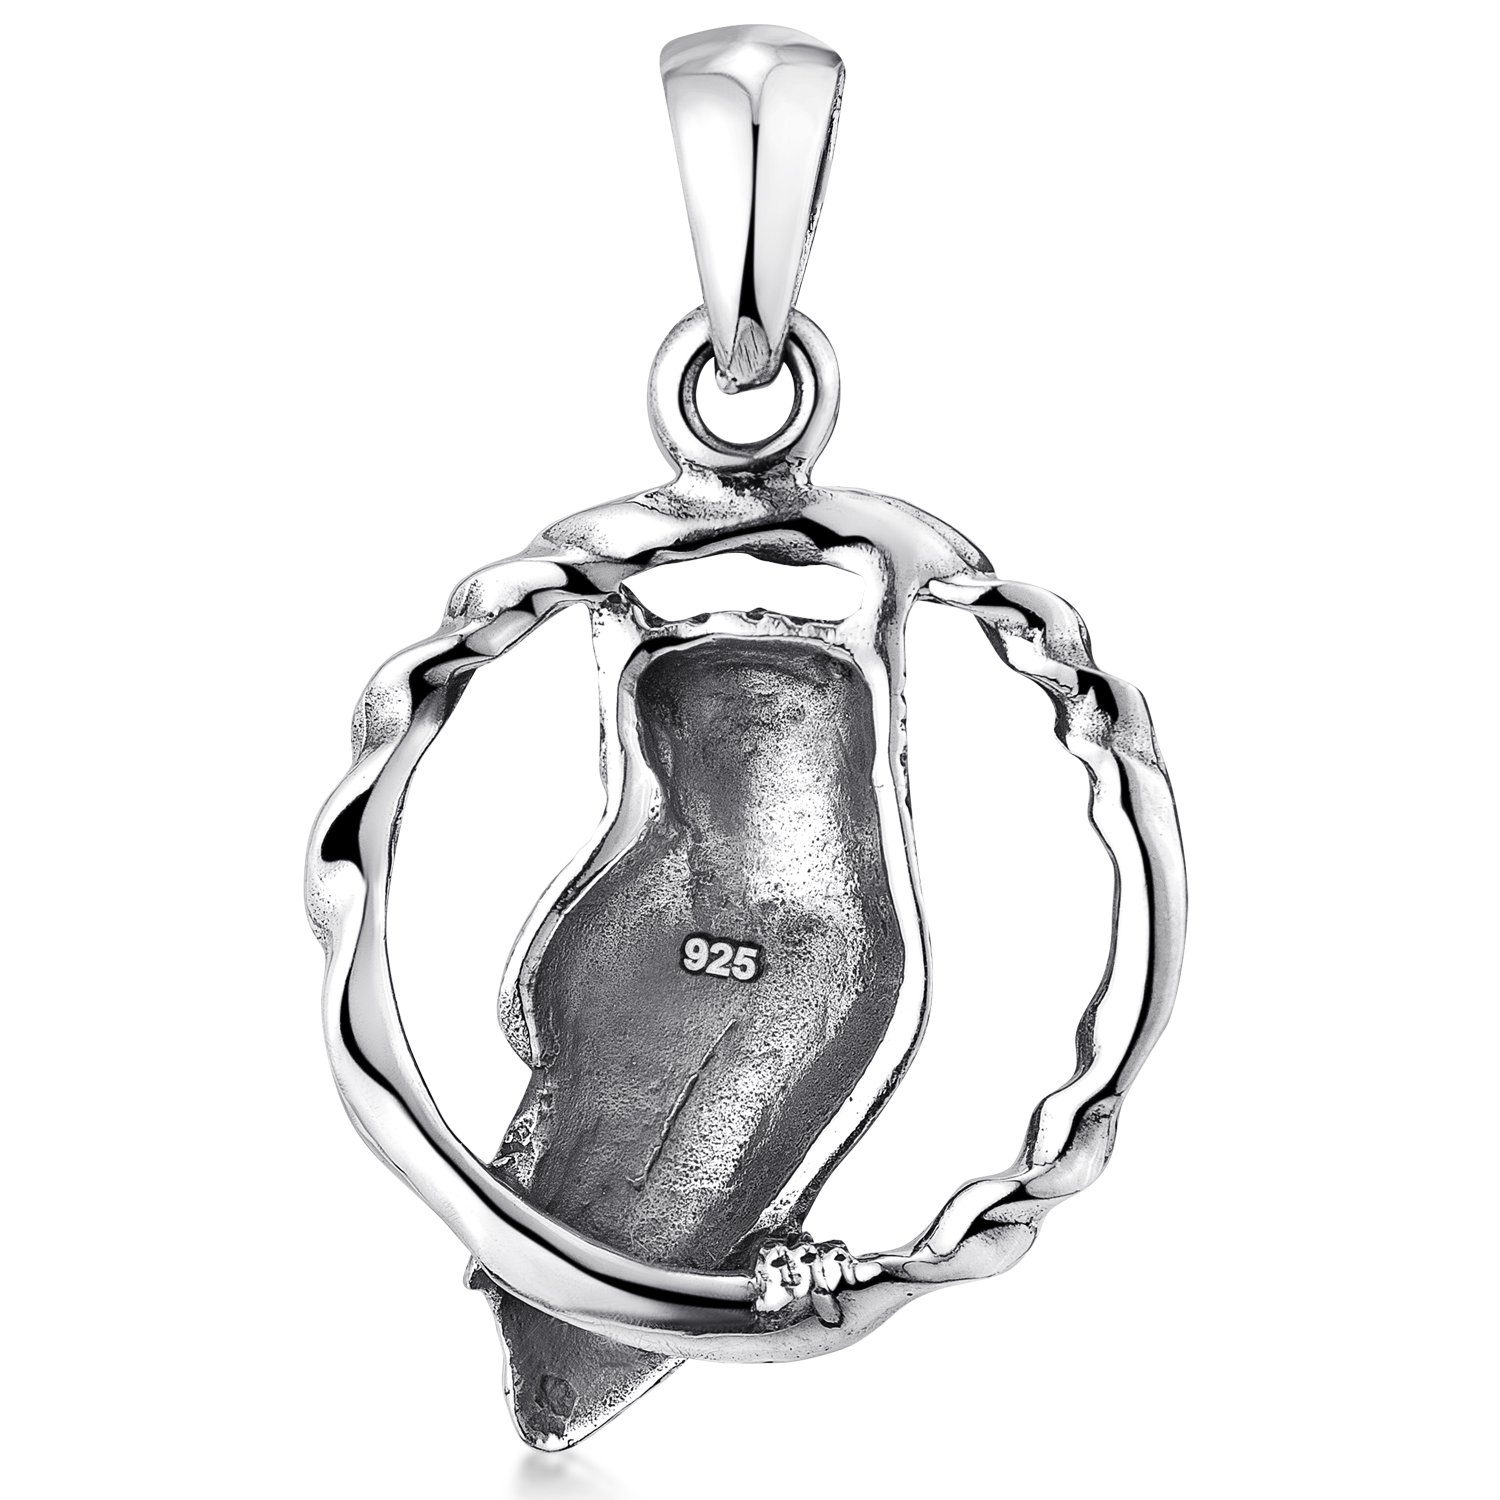 Materia Kettenanhänger Damen Herren 925 Silber, KA-121, Sterling oxidiert Ring Eule antik